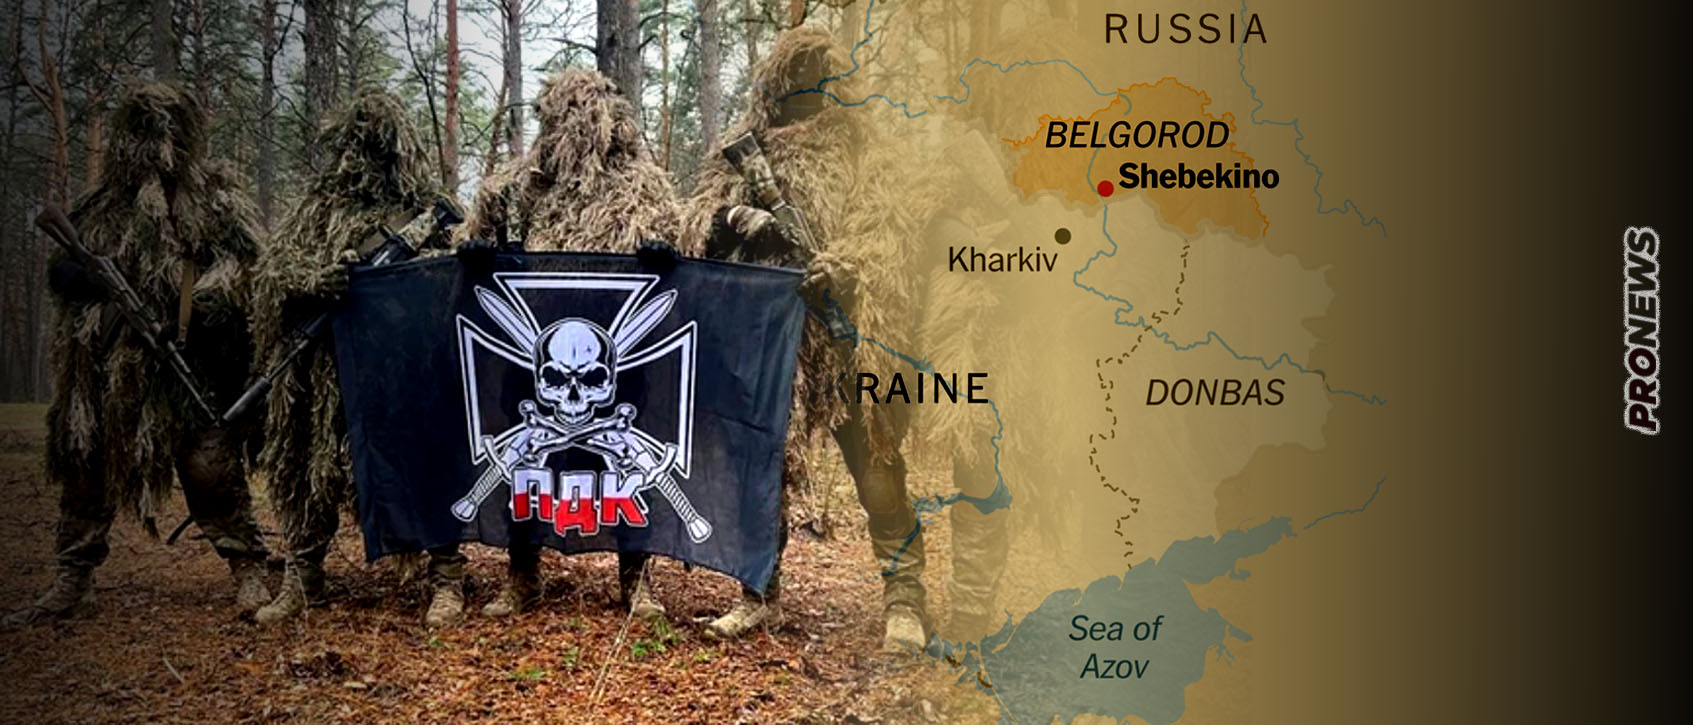 Μπέλγκοροντ: Το «Πολωνικό Εθελοντικό Σώμα» ανακοίνωσε ότι μετέχει στην  επίθεση στην ρωσική περιφέρεια!